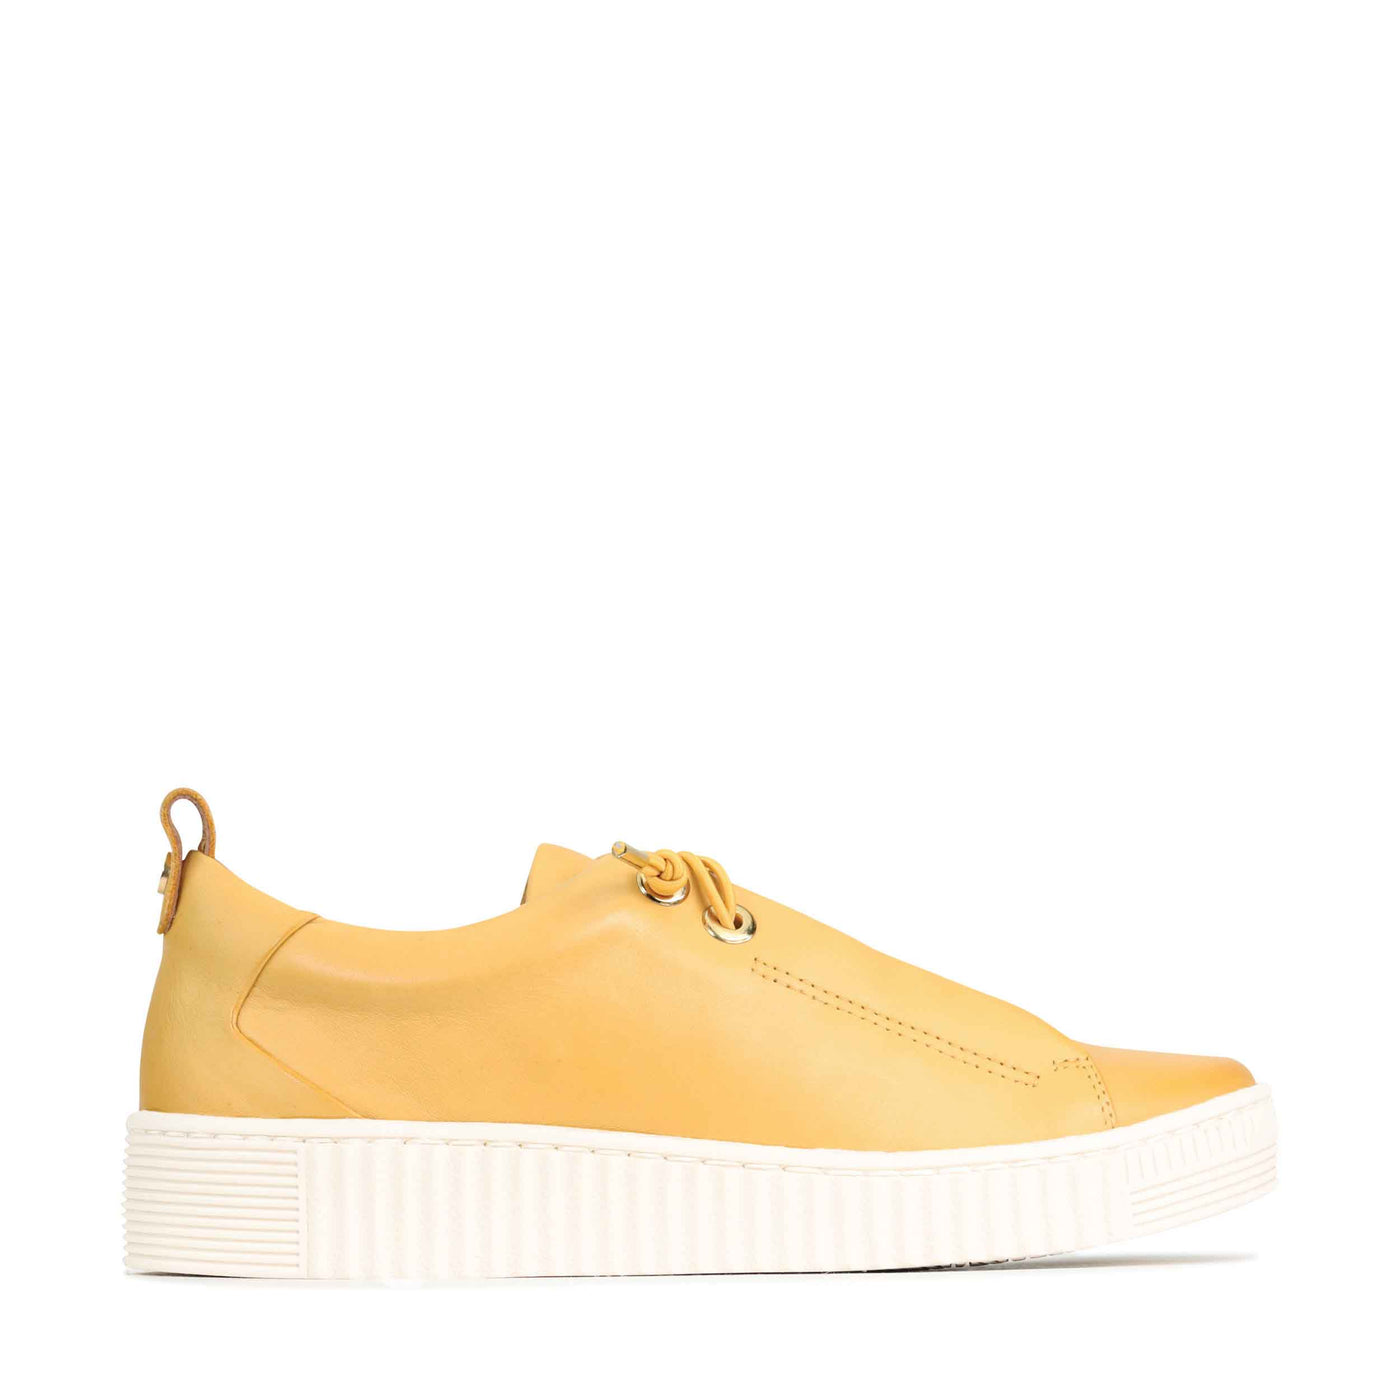 Mustard yellow womens slip on sneakers